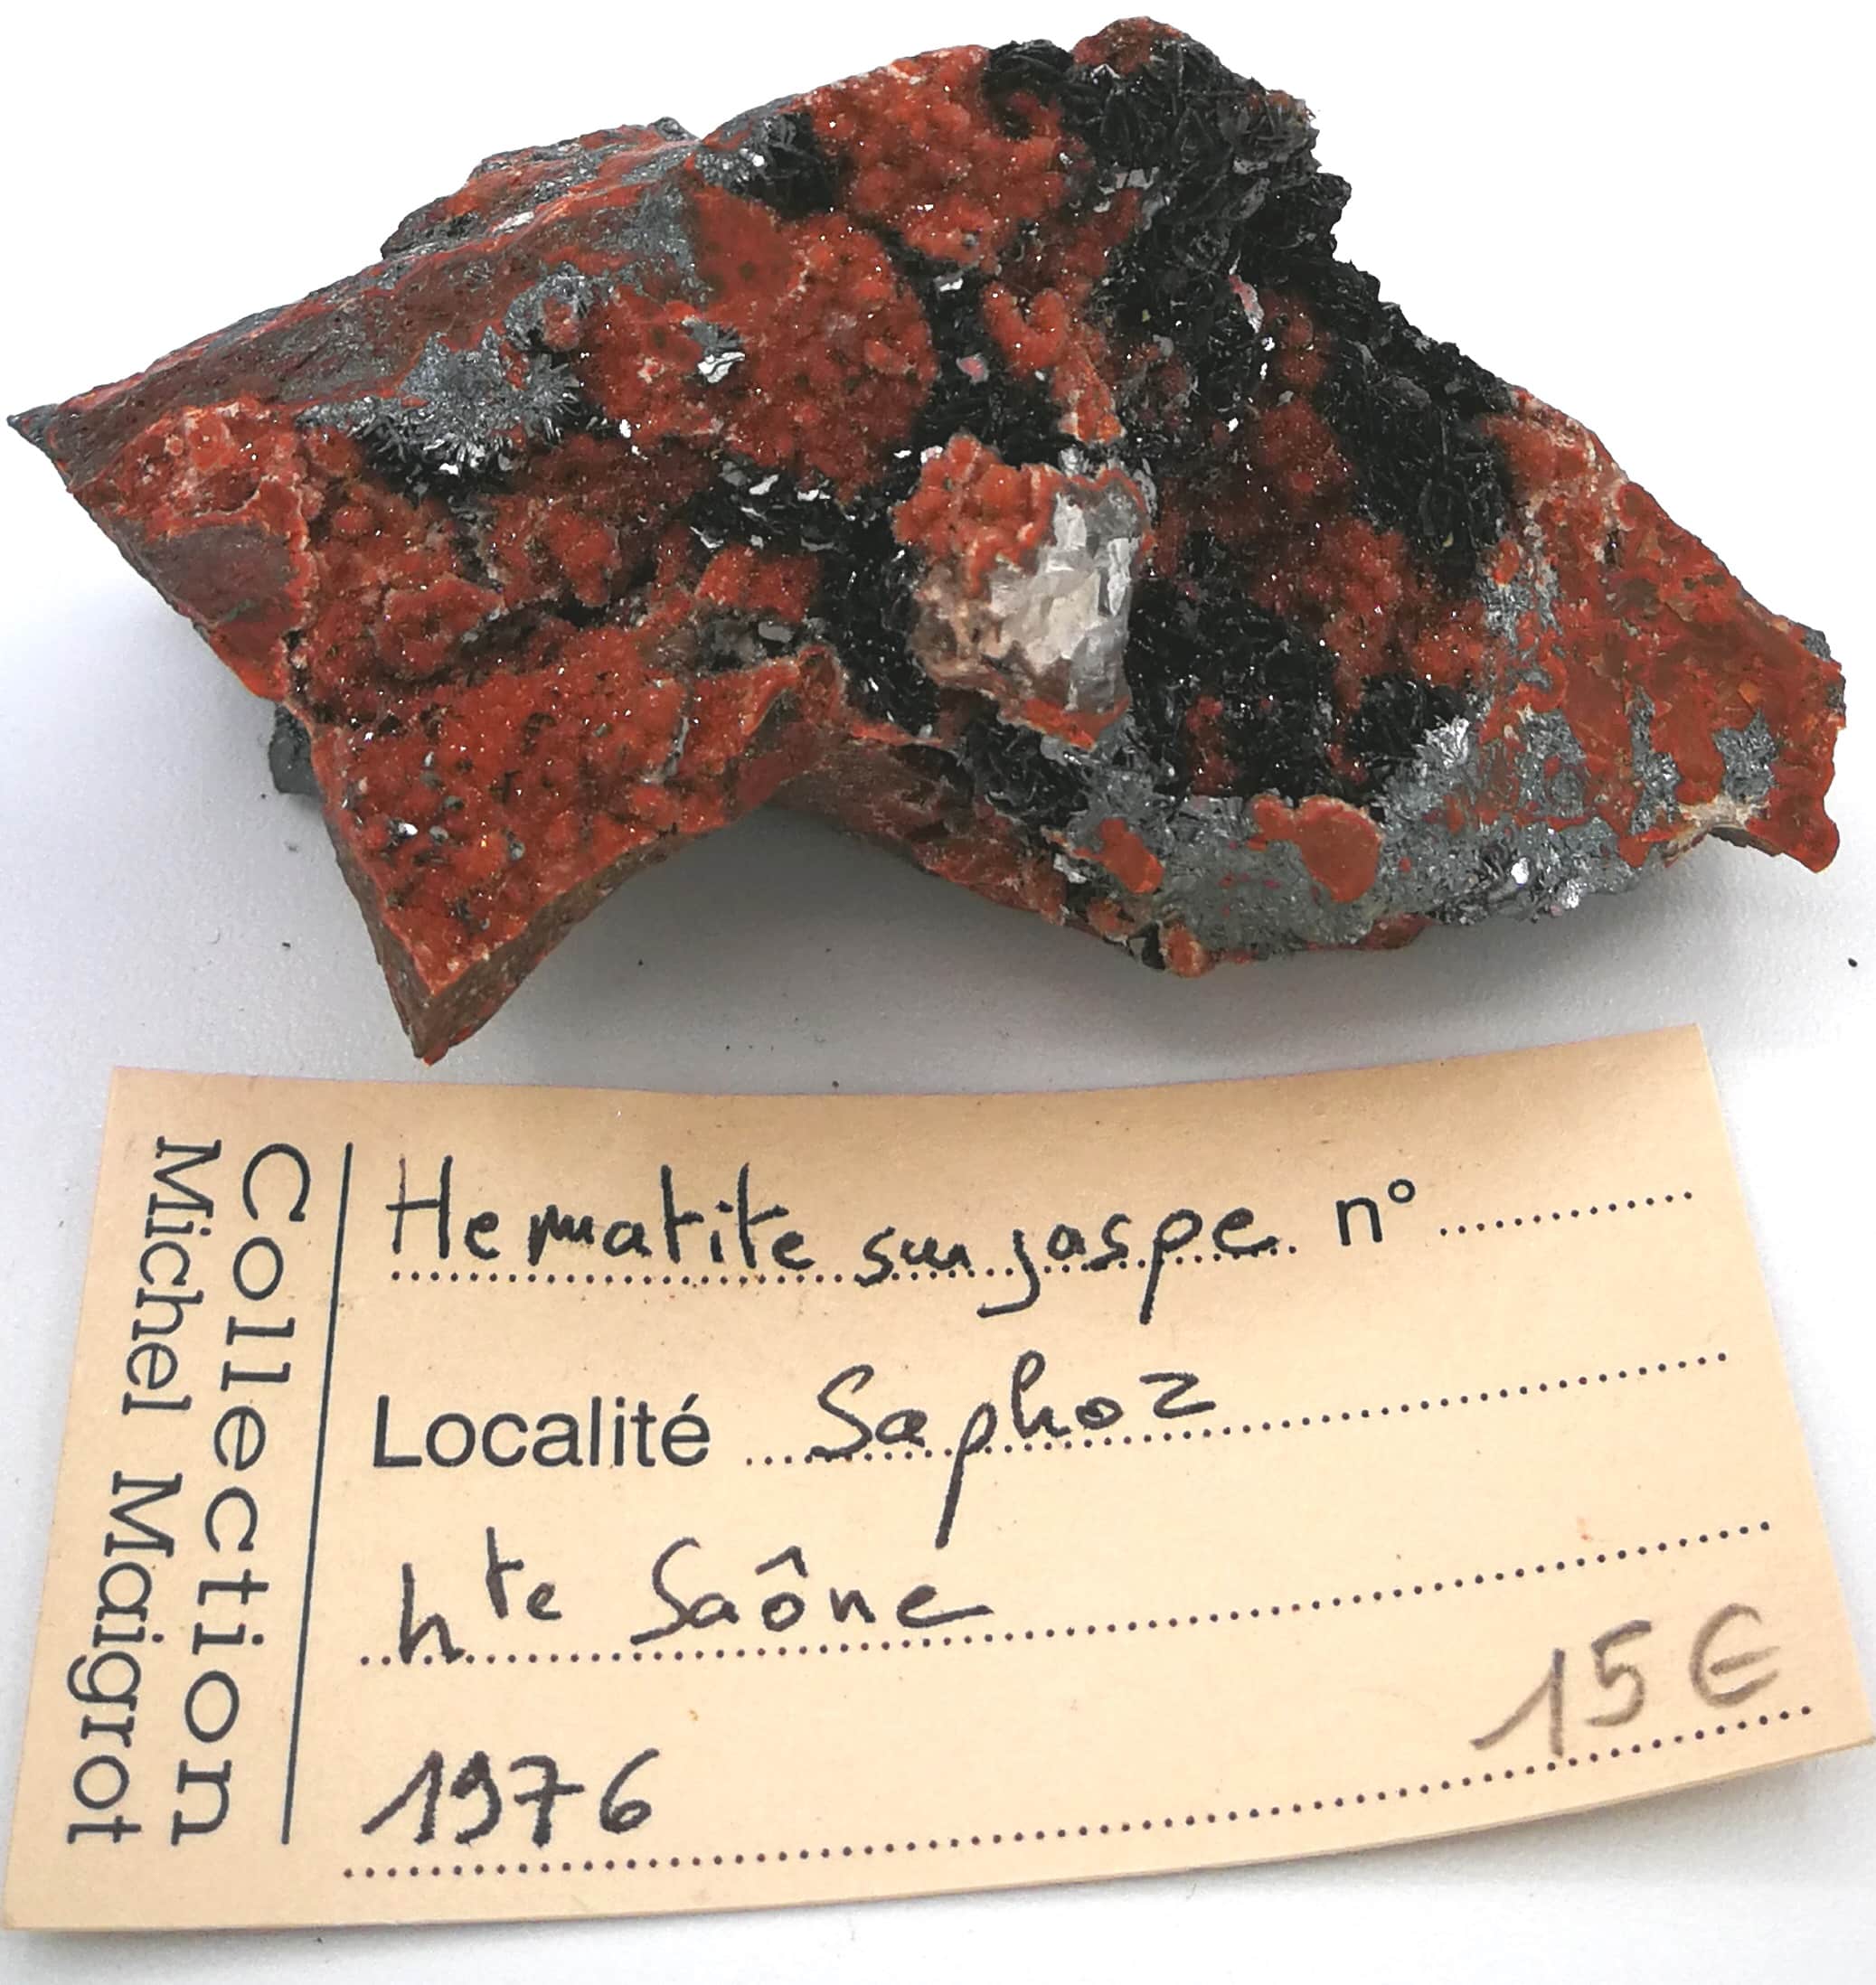 Hématite et quartz sur jaspe, Saphoz, Faucogney, Haute-Saône.